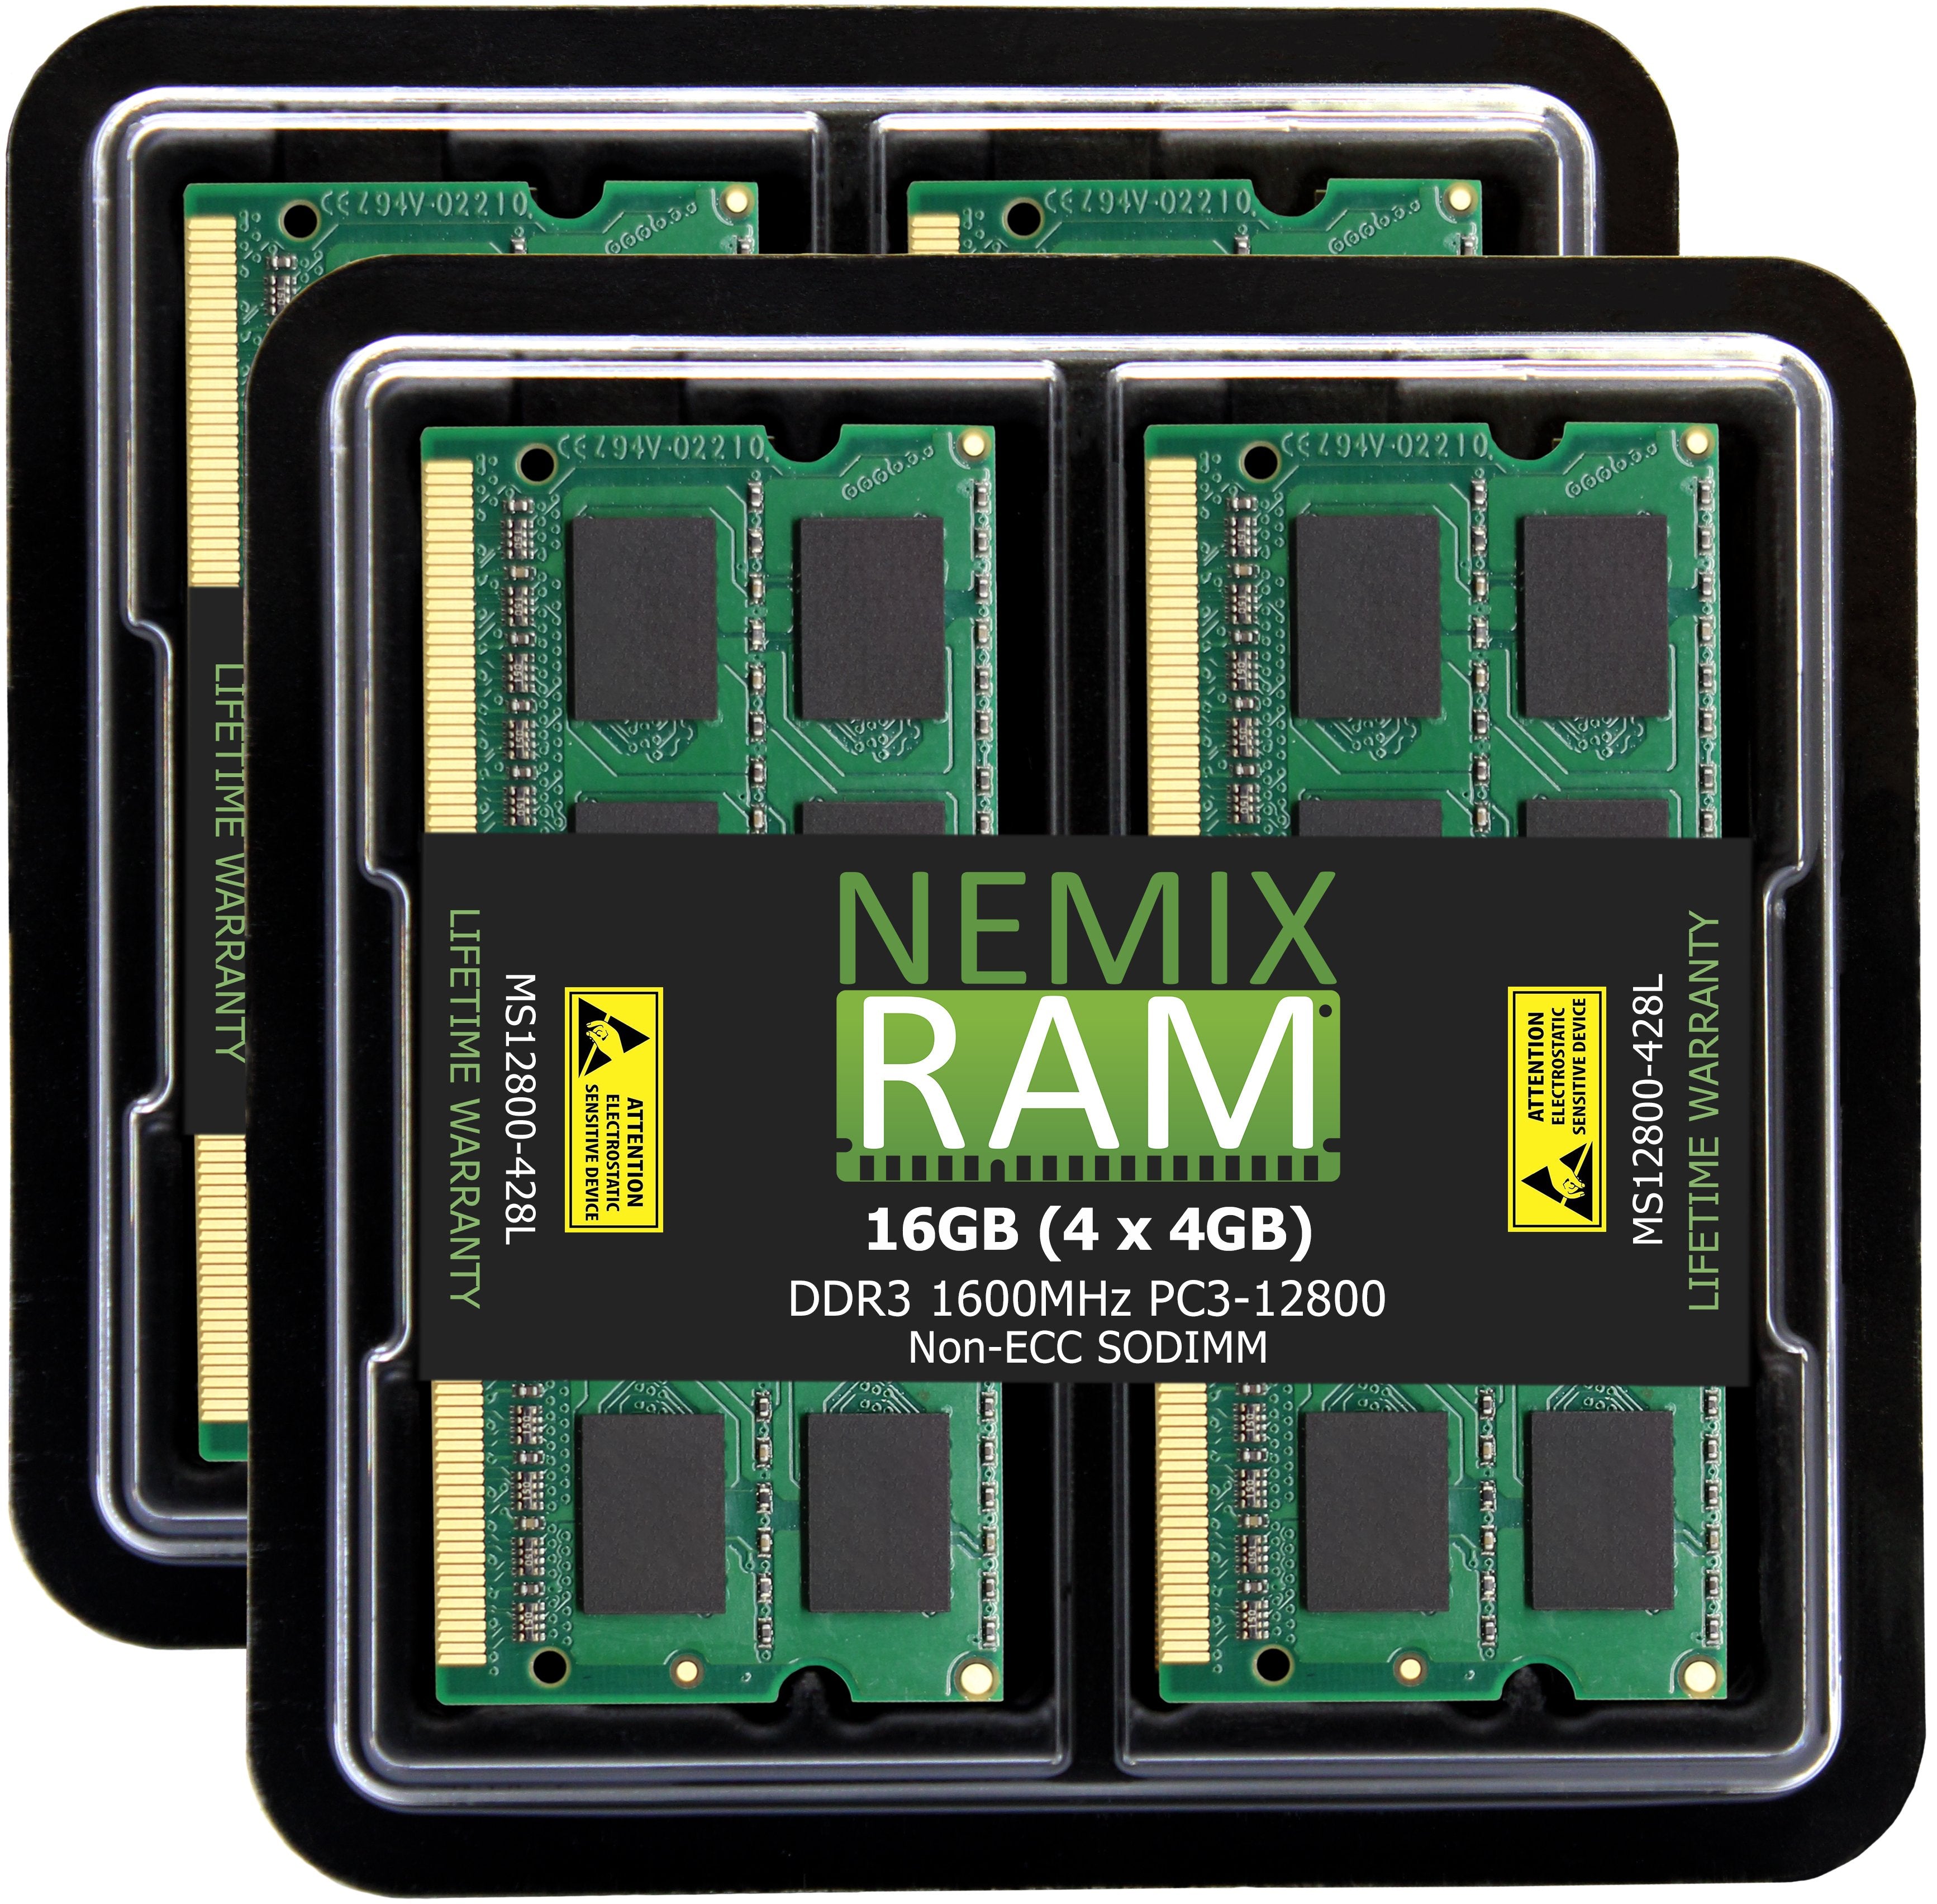 DDR3 1600MHZ PC3-12800 SODIMM for Apple Mac Mini 2012 (6,1 6,2)